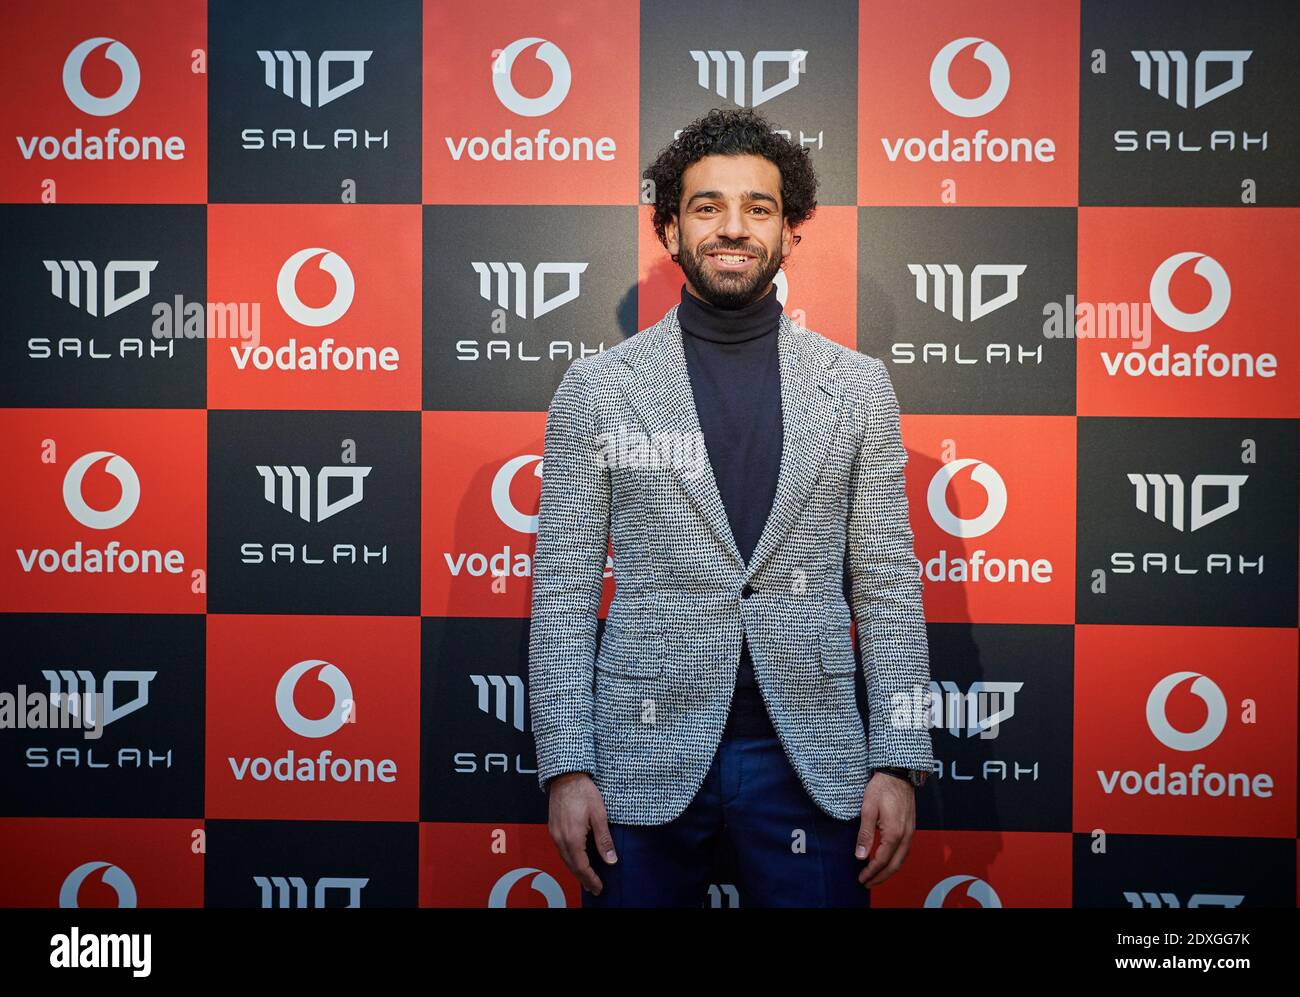 Mohamed Salah Hamed Mahrous Ghaly è un calciatore professionista egiziano che gioca come un avanti per il club della Premier League Liverpool. Foto Stock